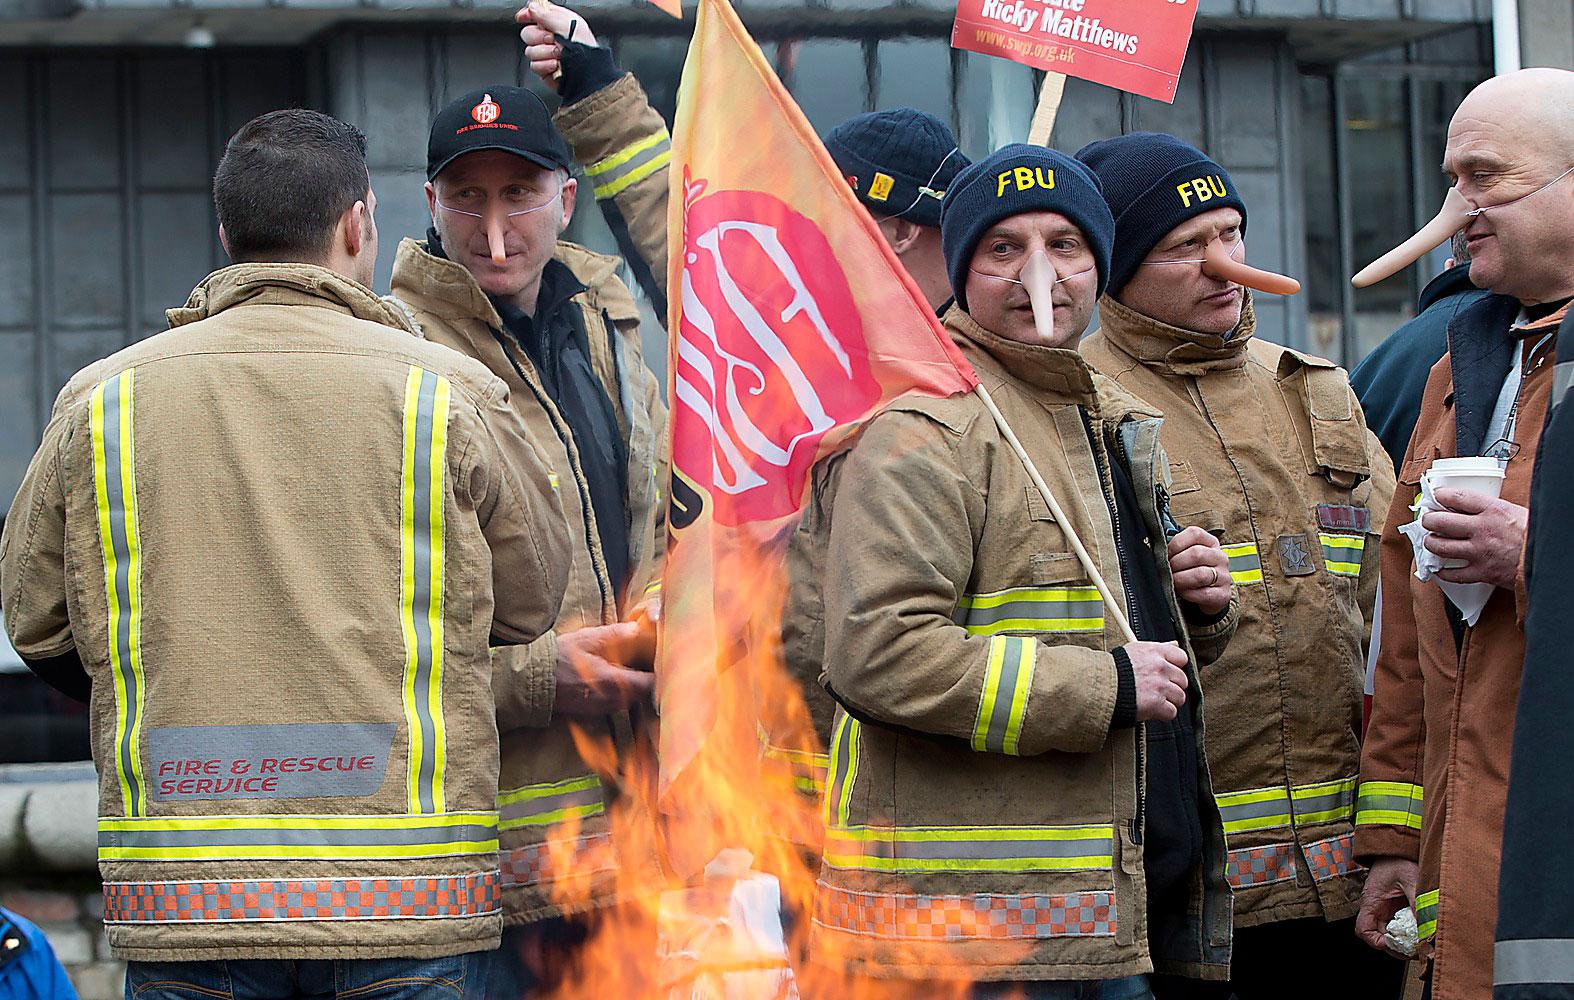 Strejkrätten i Storbritannien är på väg att stramas åt. Orimliga krav som i praktiken gör det 
omöjligt för brittiska arbetare att strejka lagligt i framtiden. Här är det brandmännen som strejkar tidigare i år.